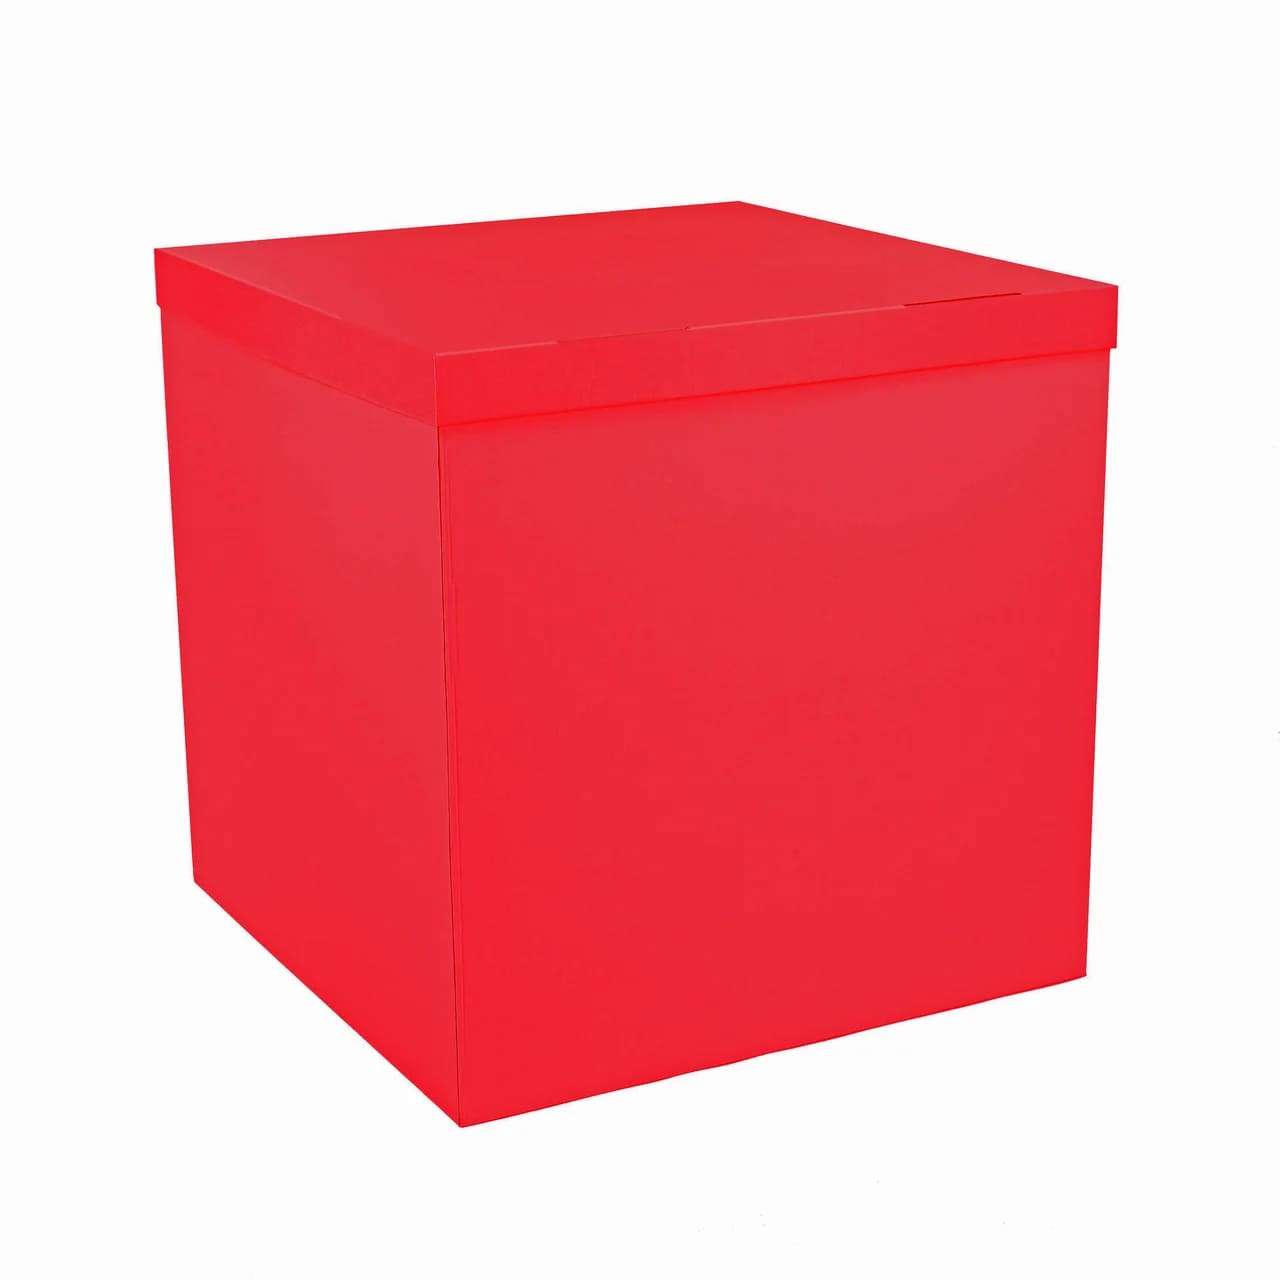 Коробка красная 70*70*70см для воздушных шаров картинка